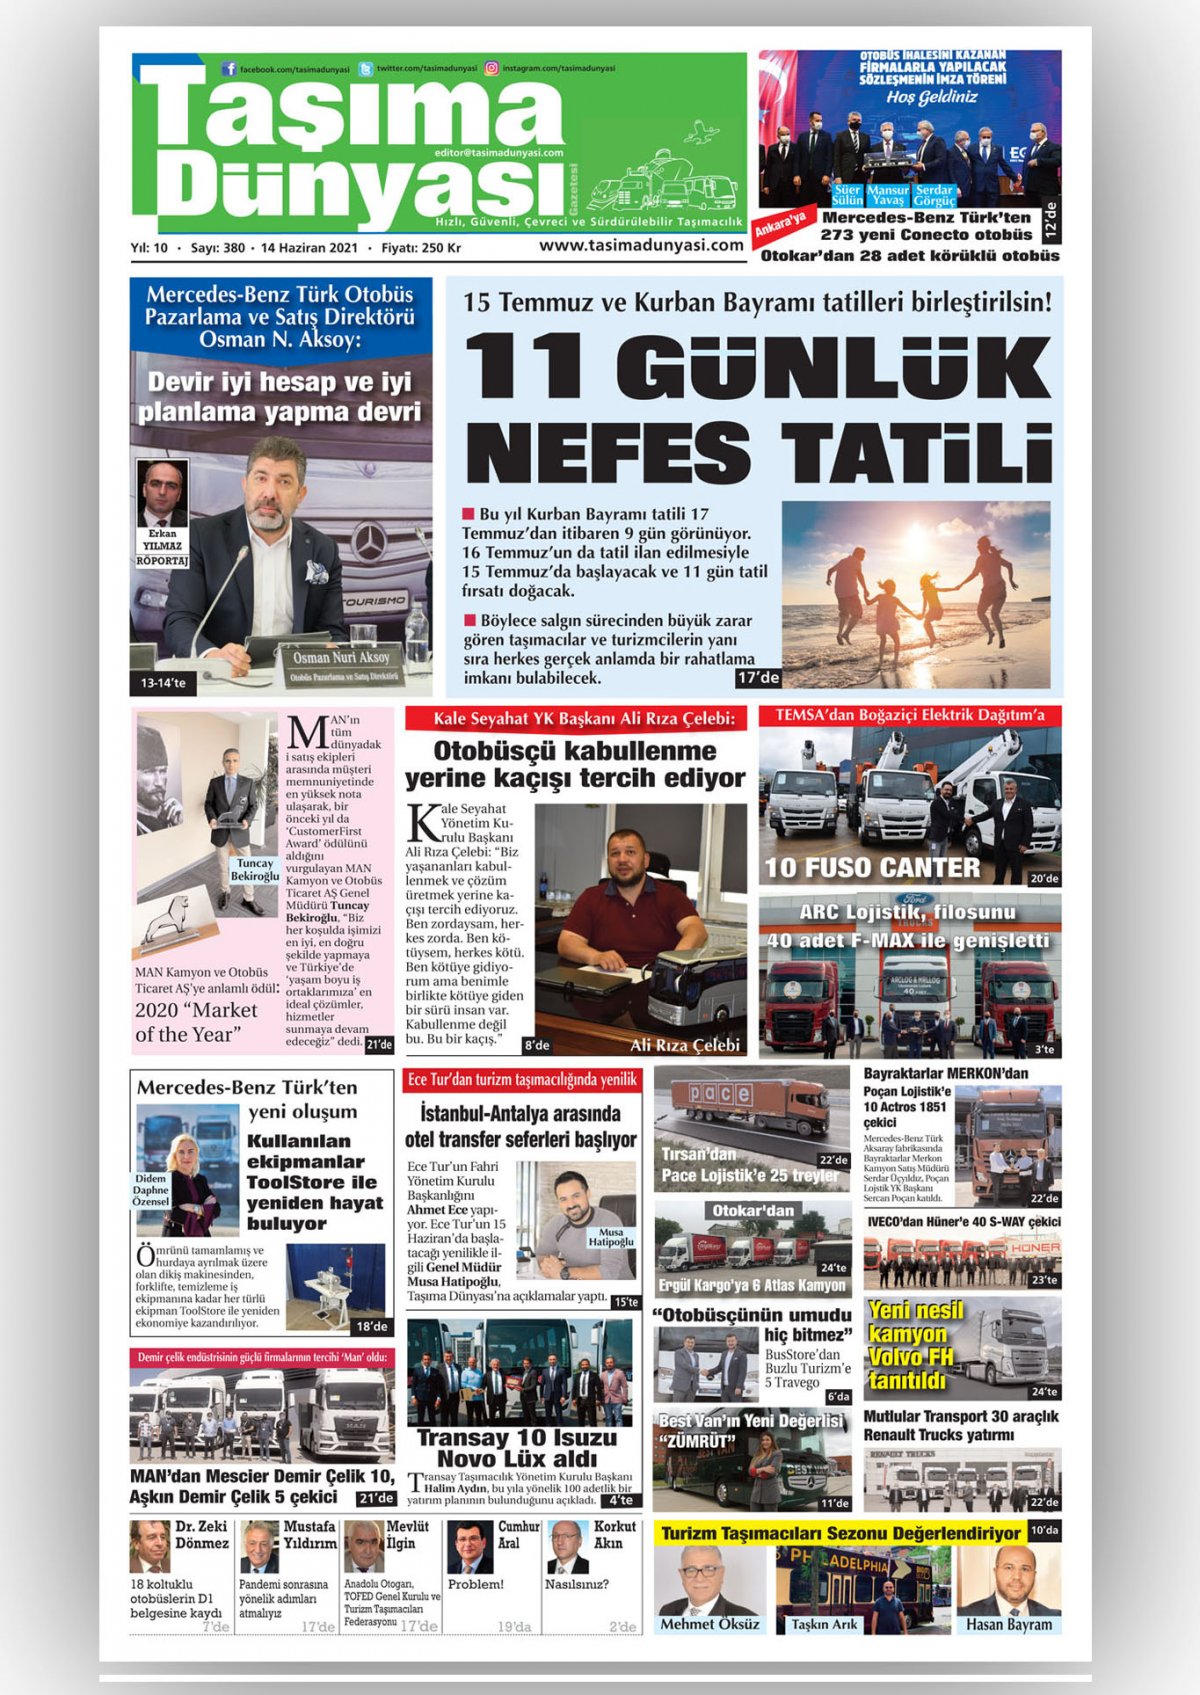 Taşıma Dünyası Gazetesi - 14.06.2021 Manşeti